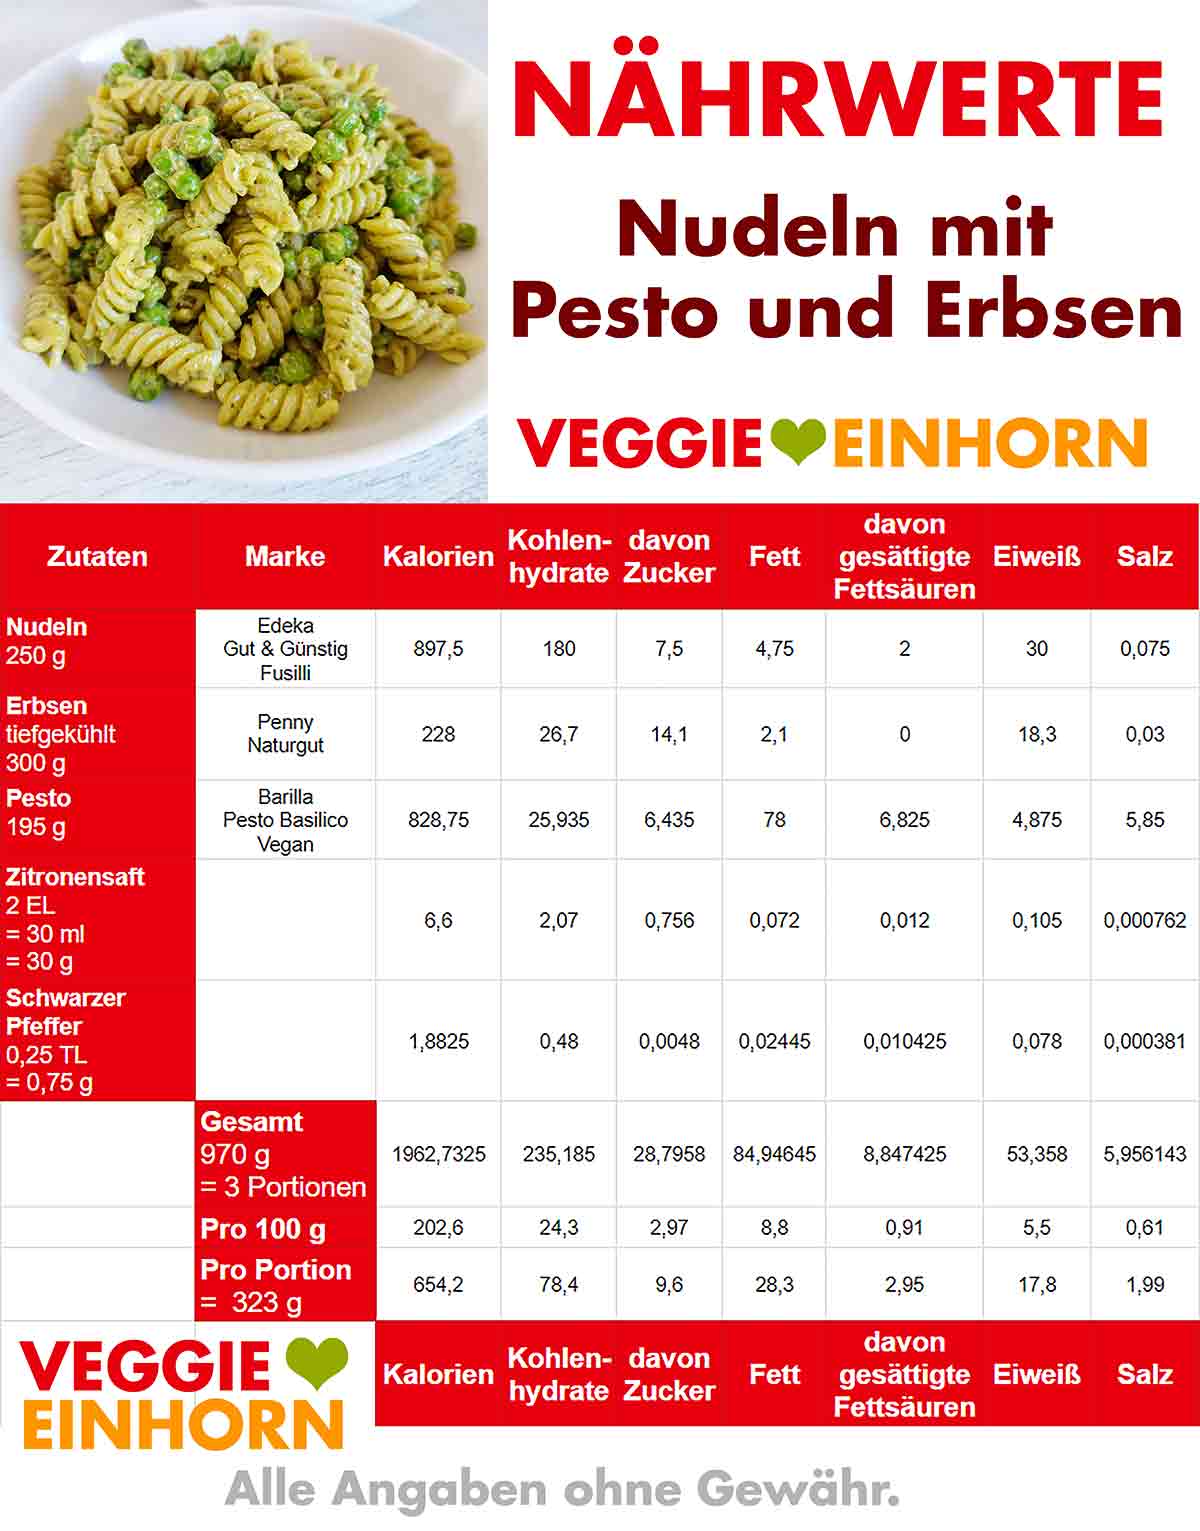 Nährwerte Tabelle für Nudeln mit veganem Pesto und Erbsen